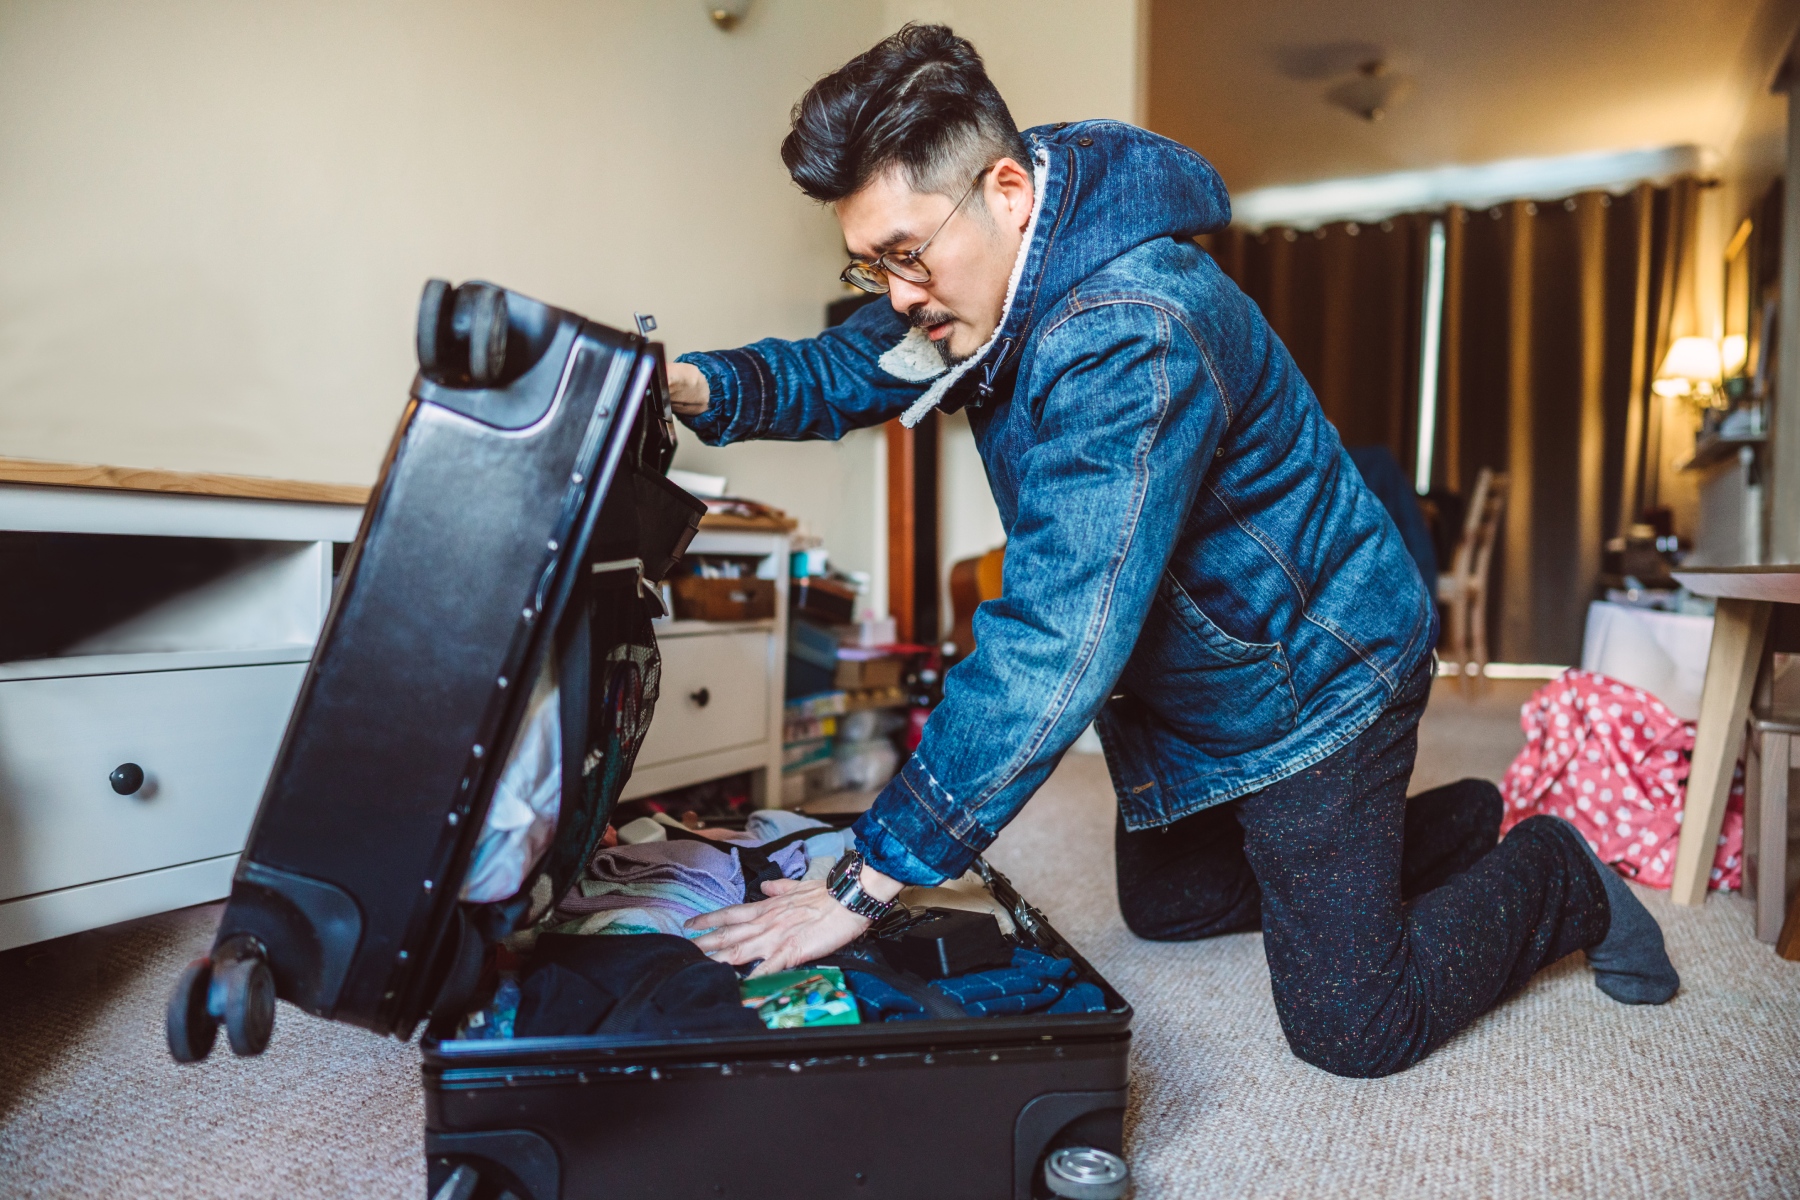 Man wearing denim jacket packs large suitcase in his room